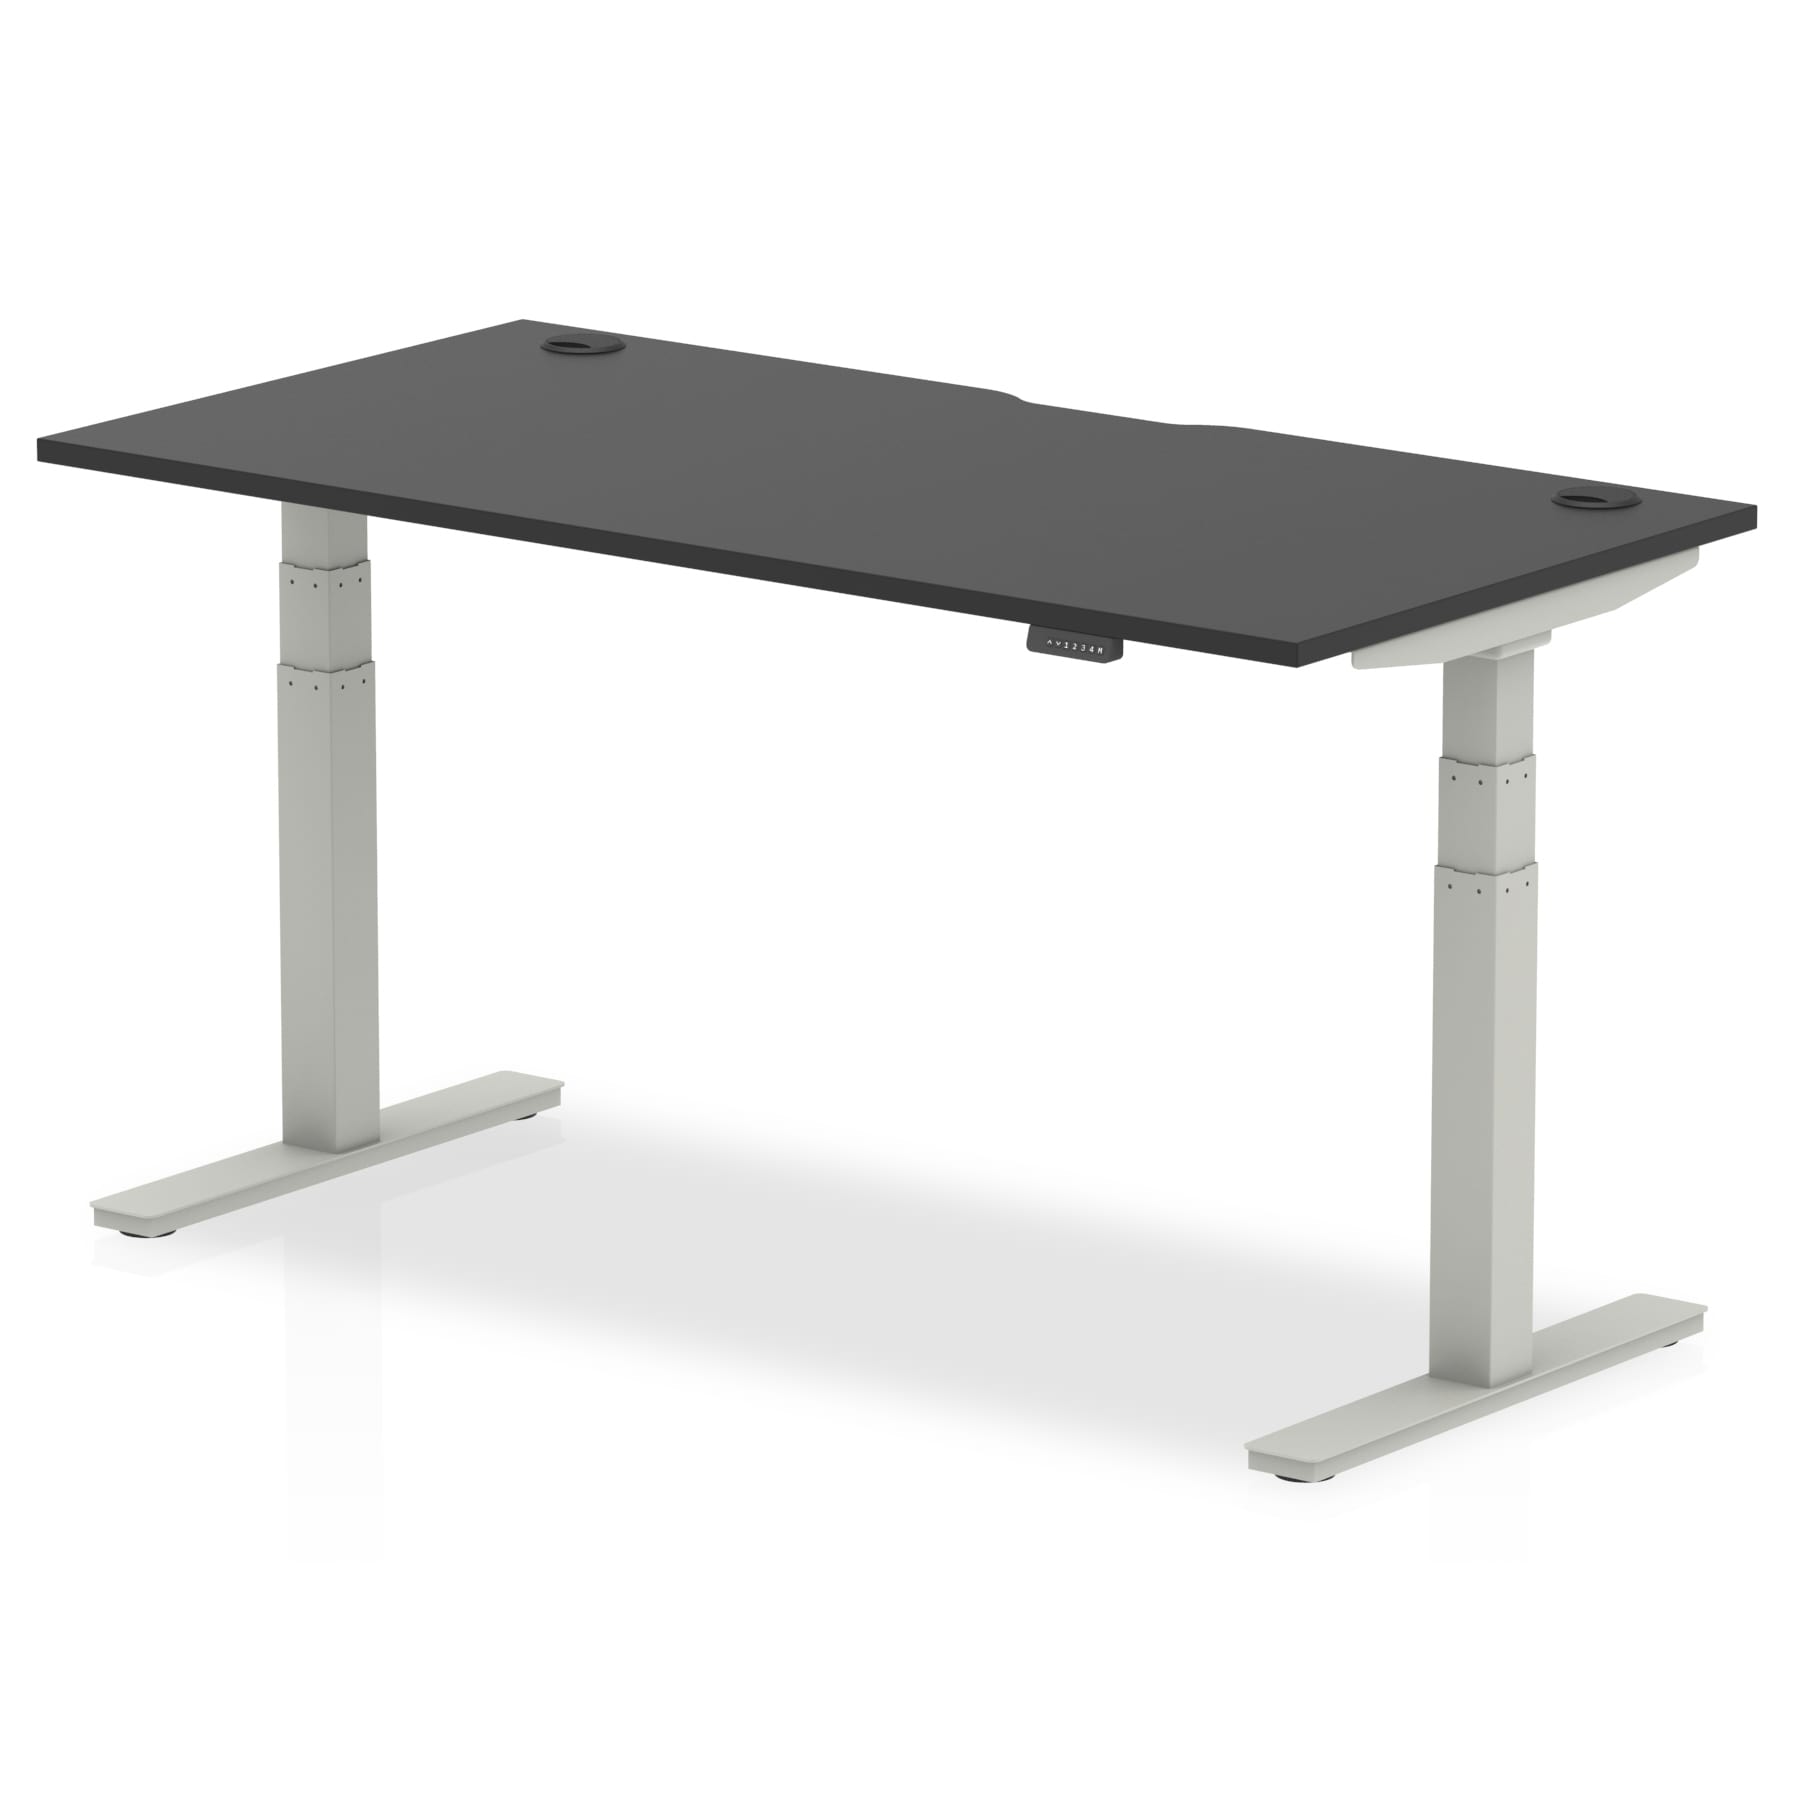 Upstand 60W x 30D Standing Desk